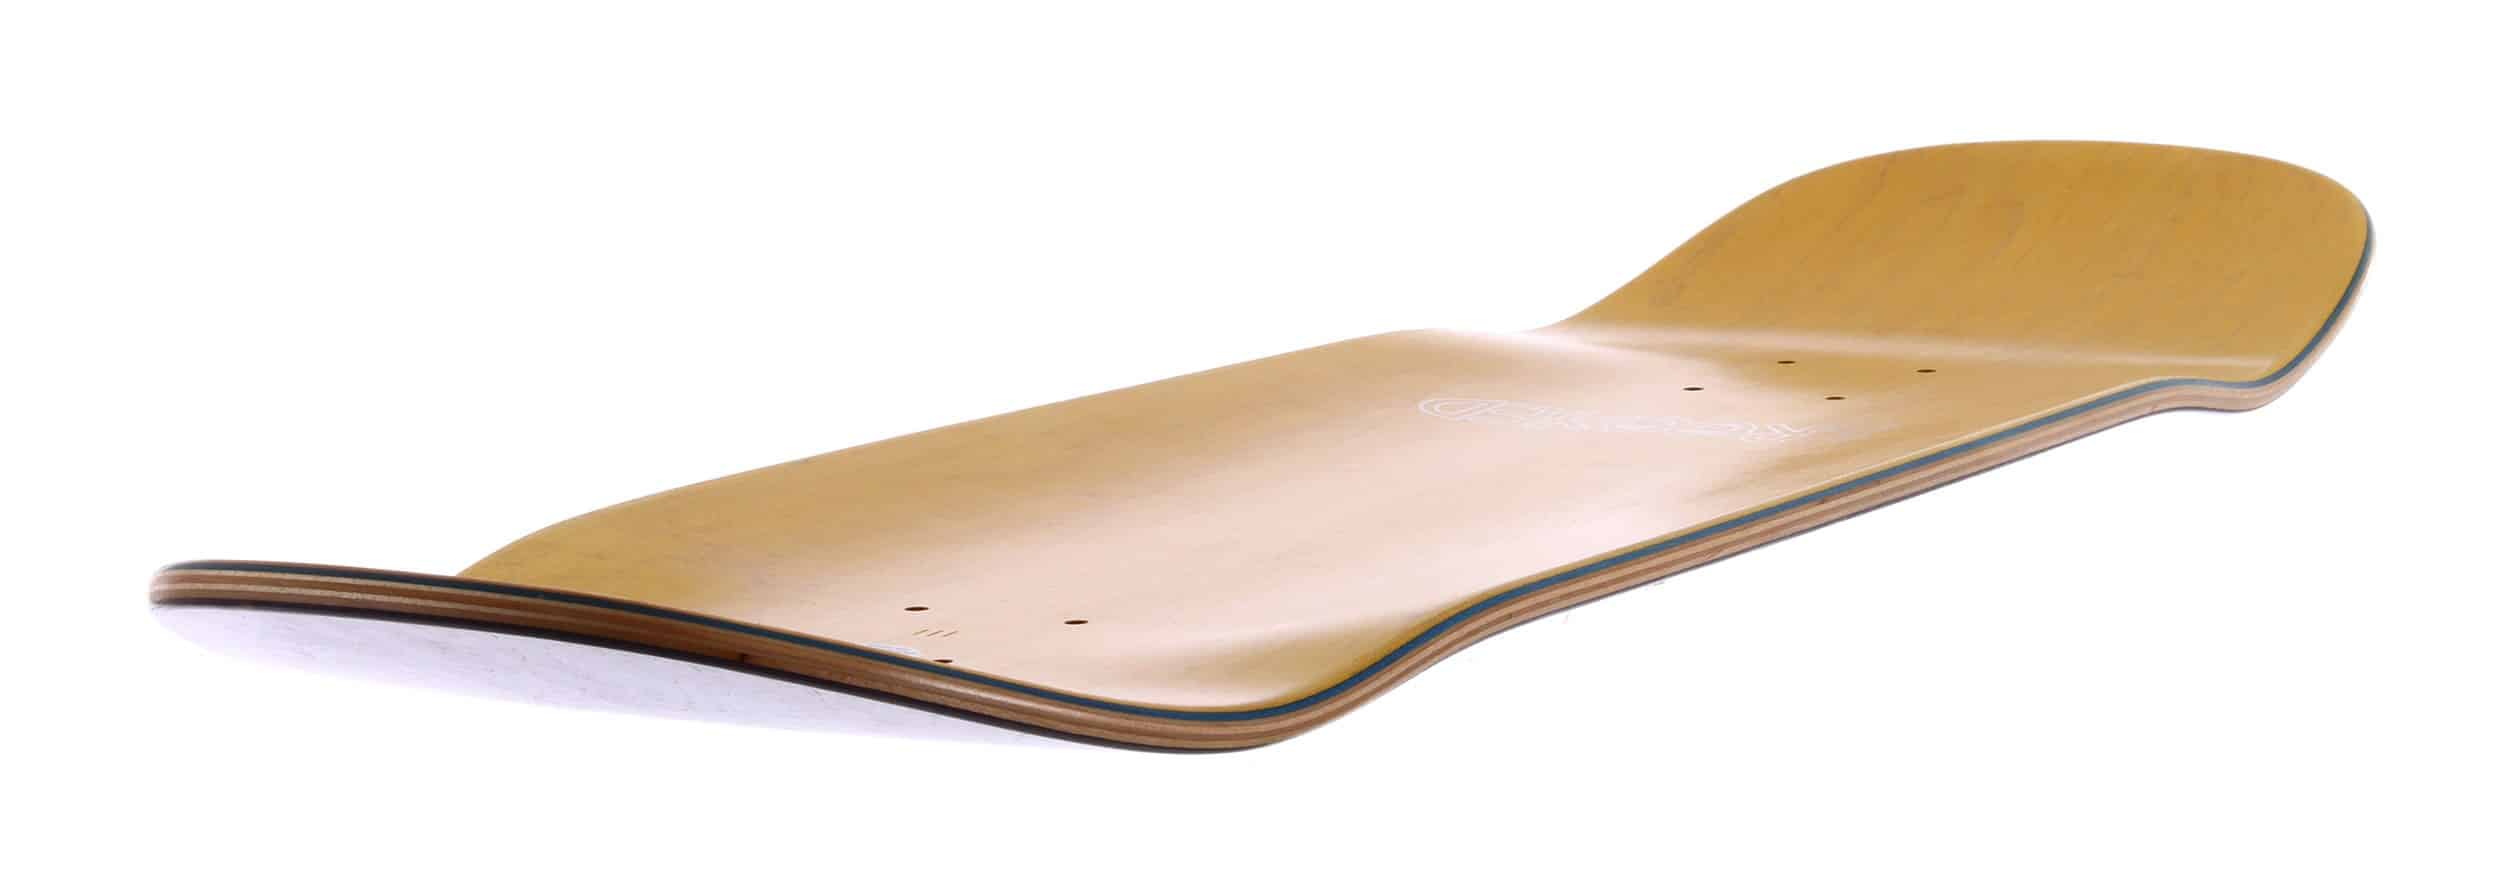 Krooked Skateboards – Mark Gonzales Frame Face Deck